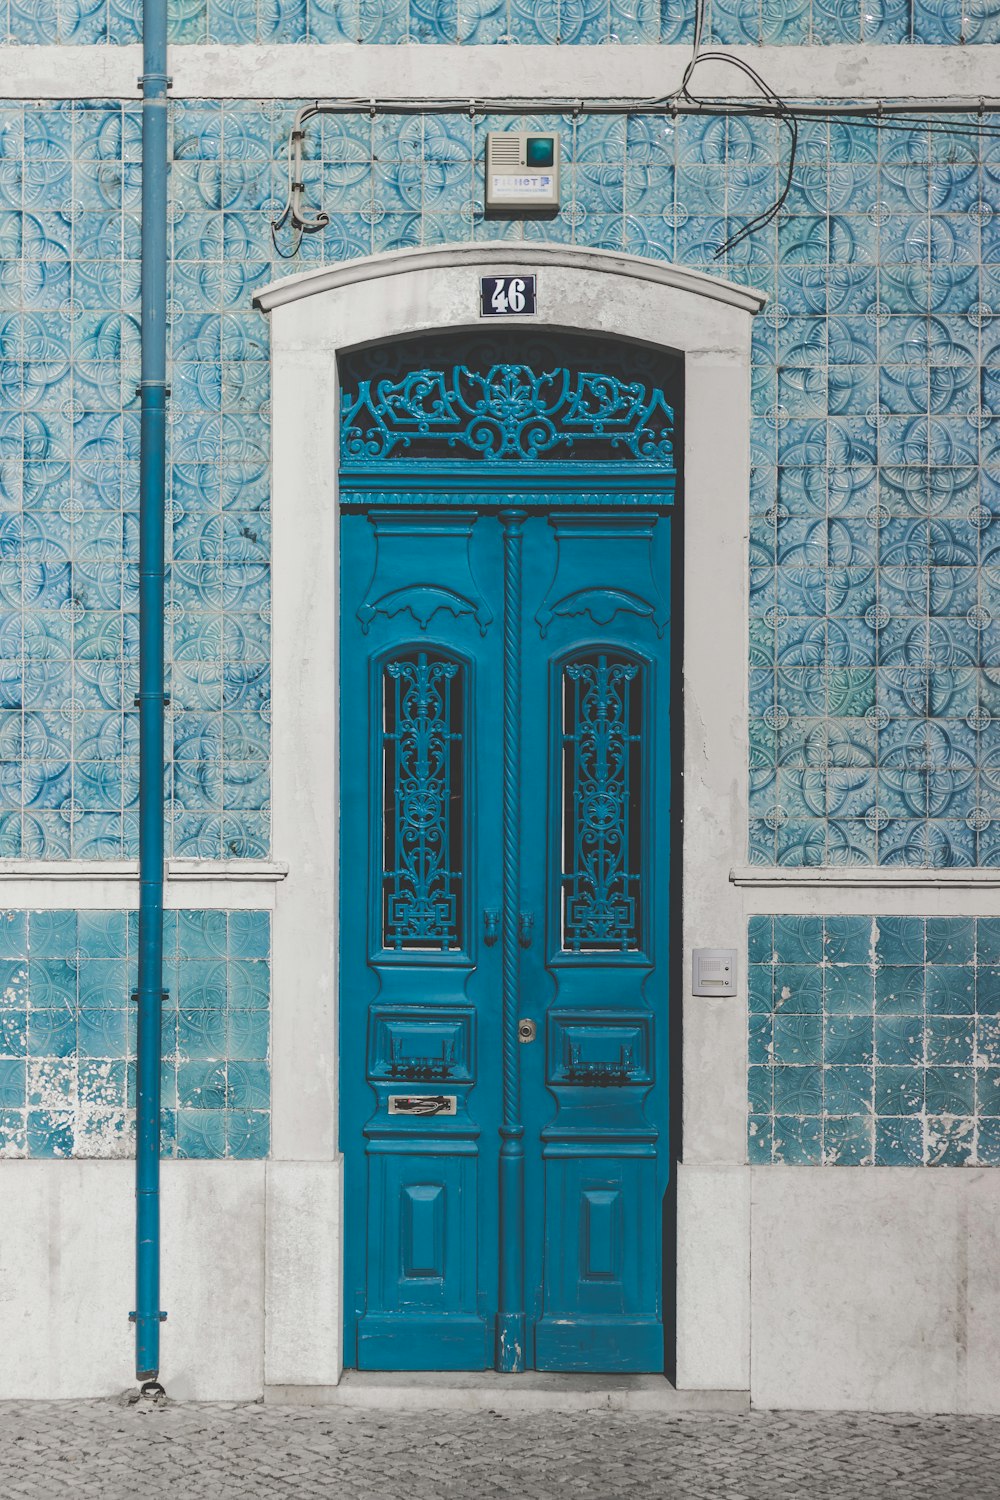 blaue Holztür geschlossen mit 46 Zeichen